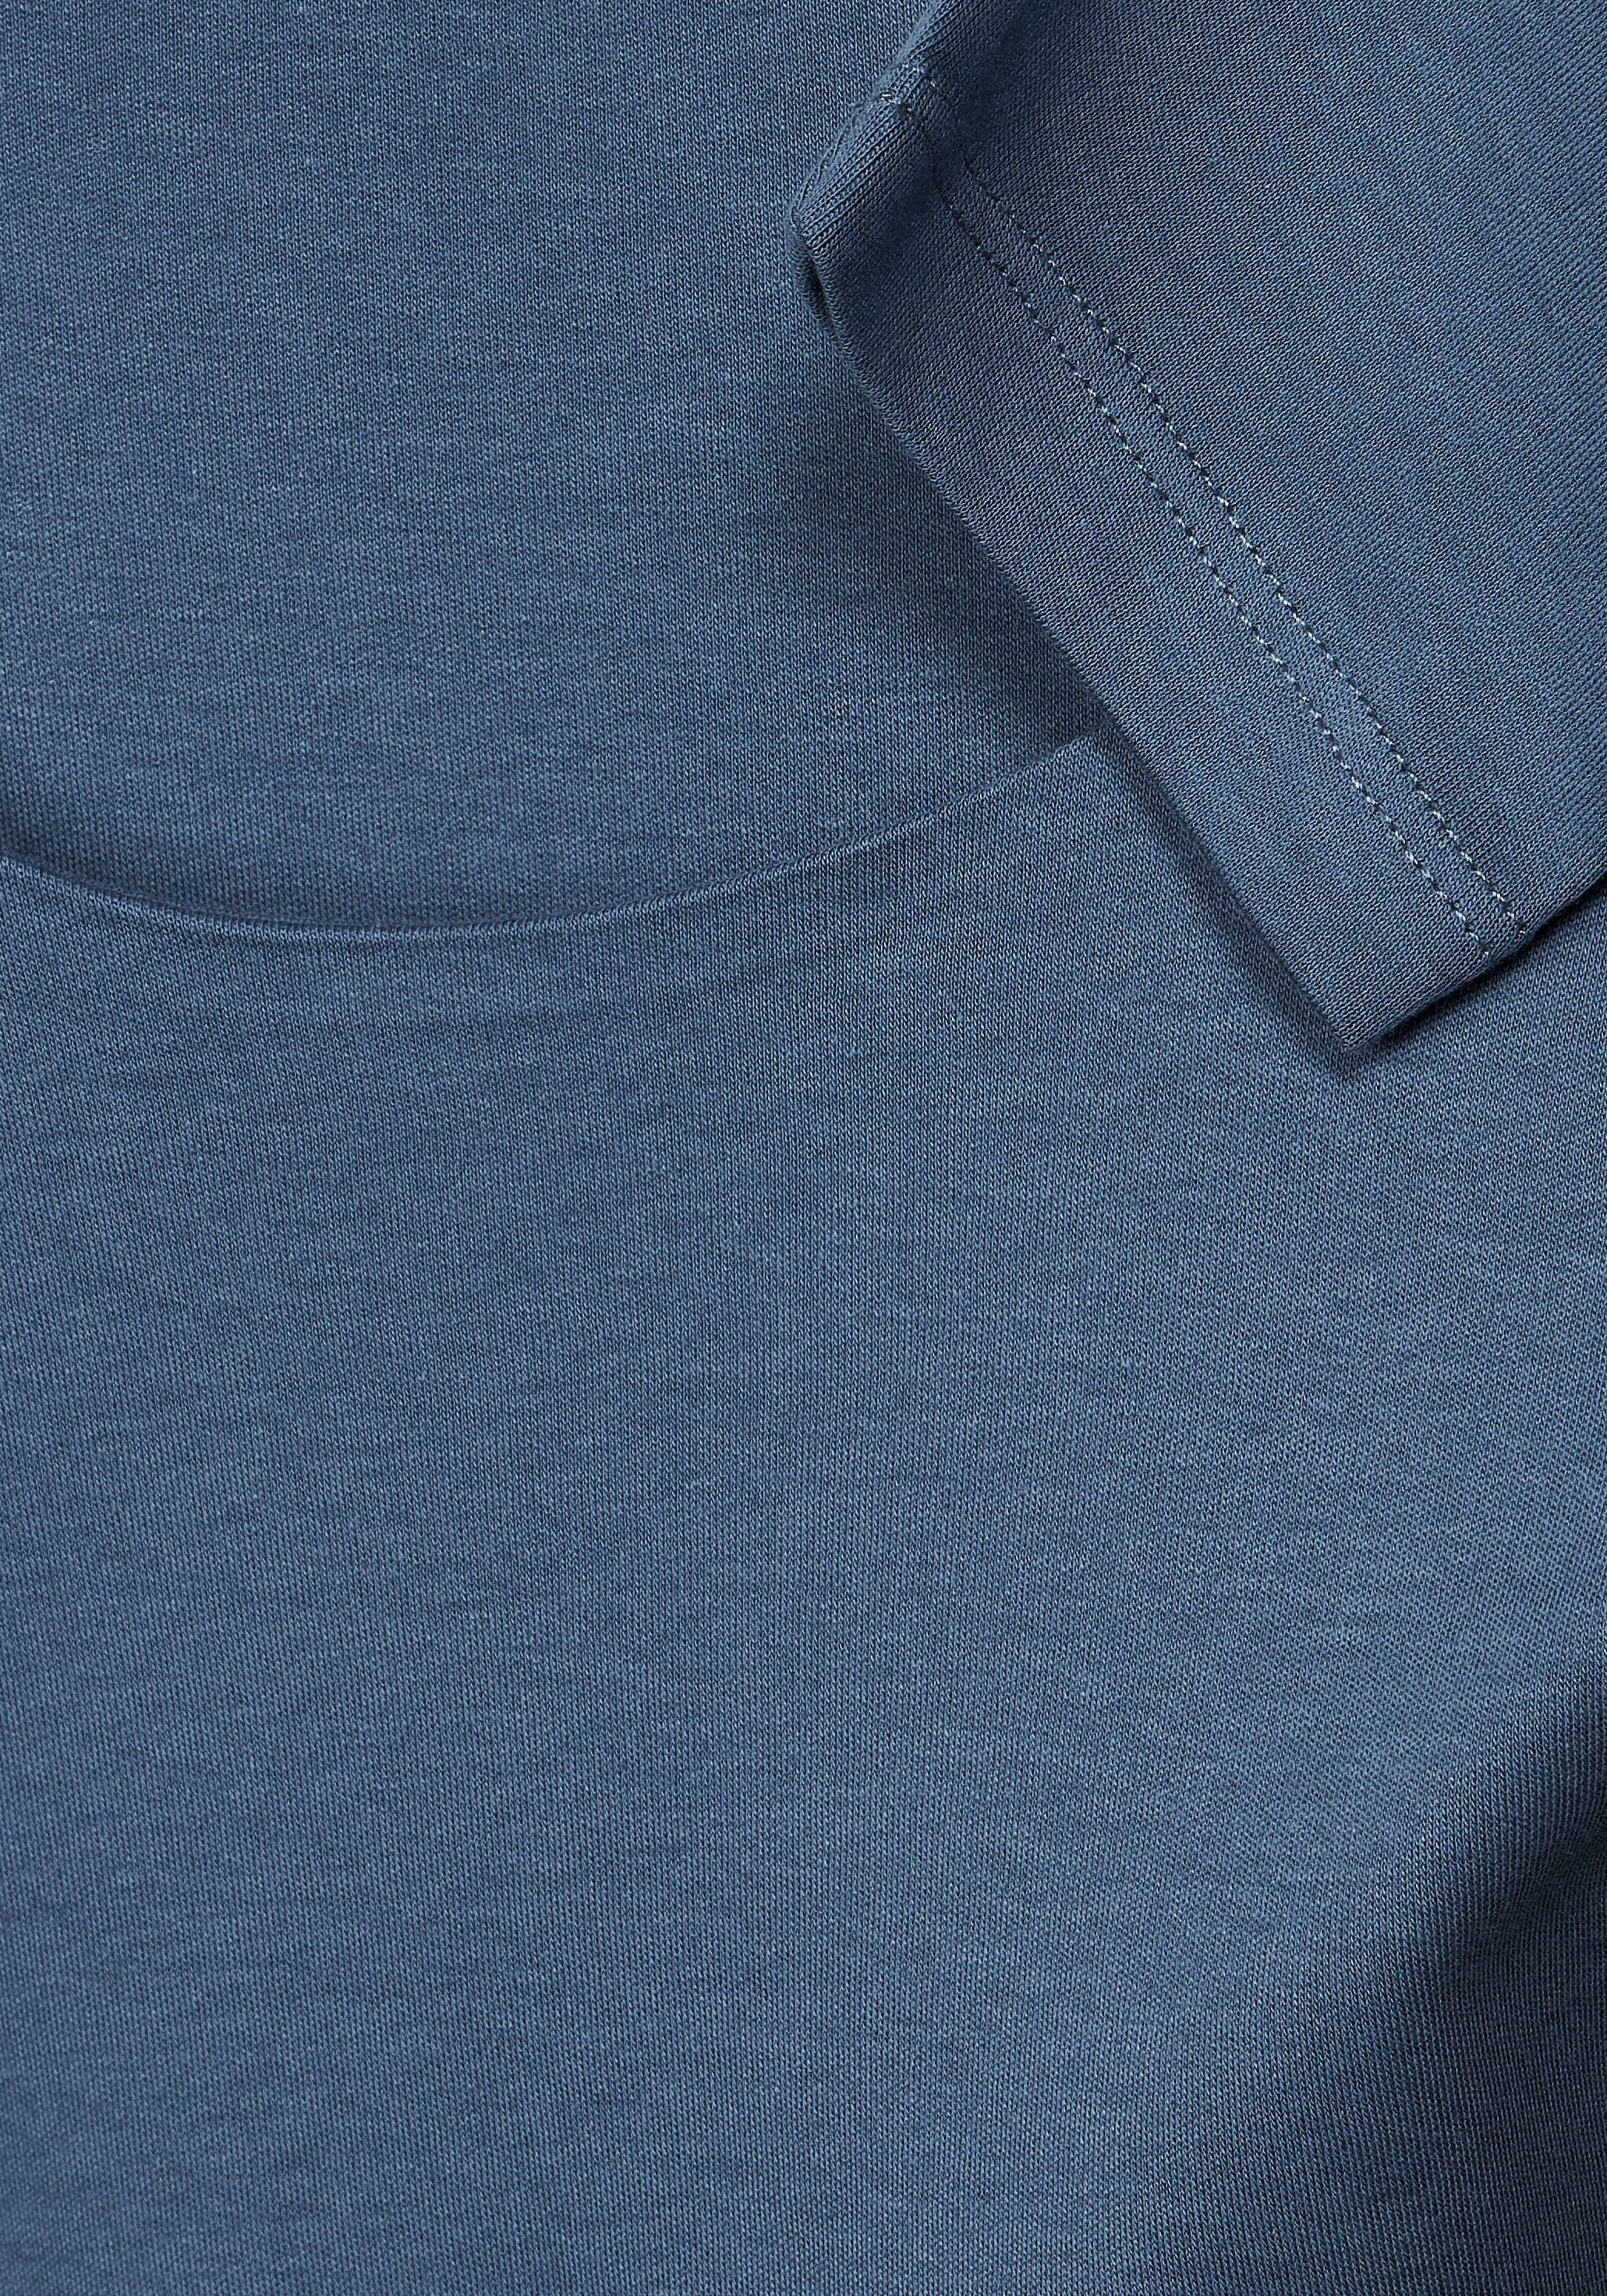 3/4-Arm-Shirt bay STREET blue schlichter ONE Unifarbe Pania dark Style in